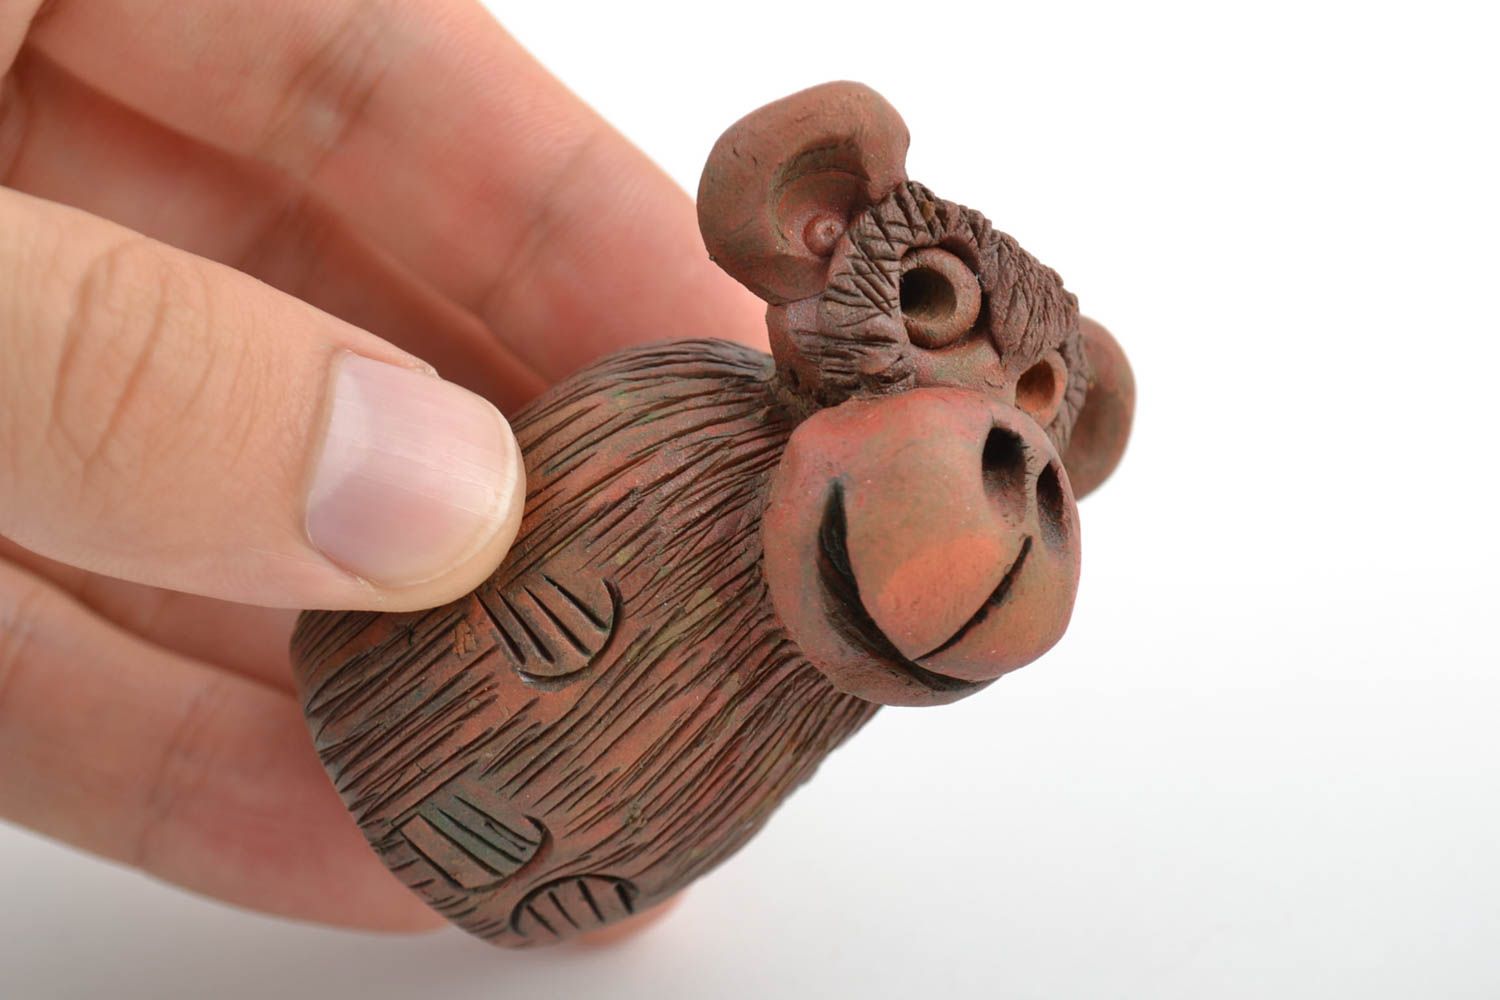 Фигурка обезьяны для для настольного декора миниатюрная из красной глины фото 2